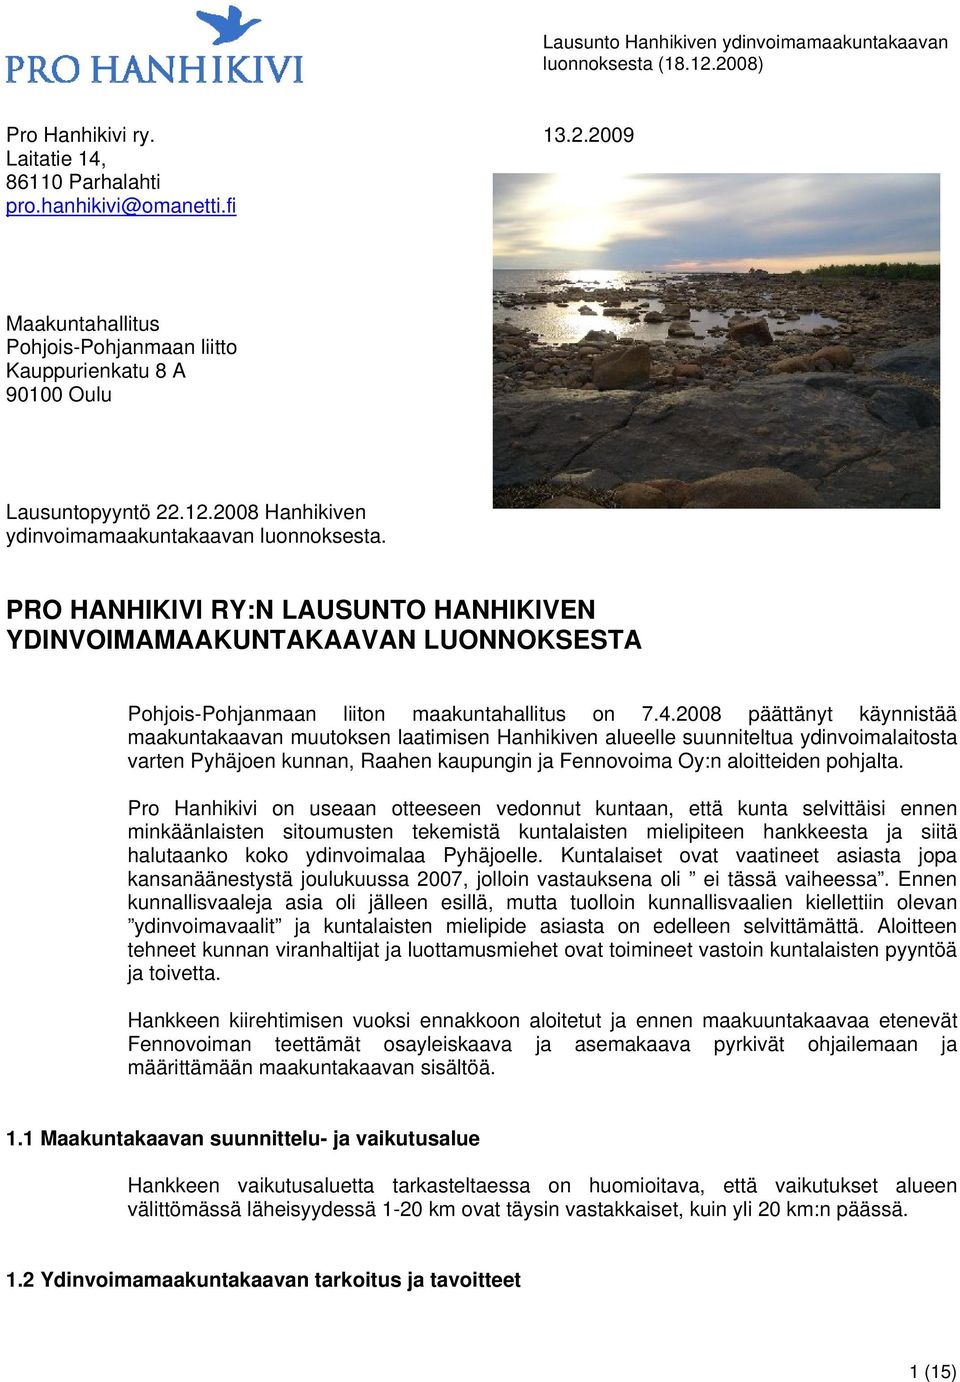 2008 päättänyt käynnistää maakuntakaavan muutoksen laatimisen Hanhikiven alueelle suunniteltua ydinvoimalaitosta varten Pyhäjoen kunnan, Raahen kaupungin ja Fennovoima Oy:n aloitteiden pohjalta.